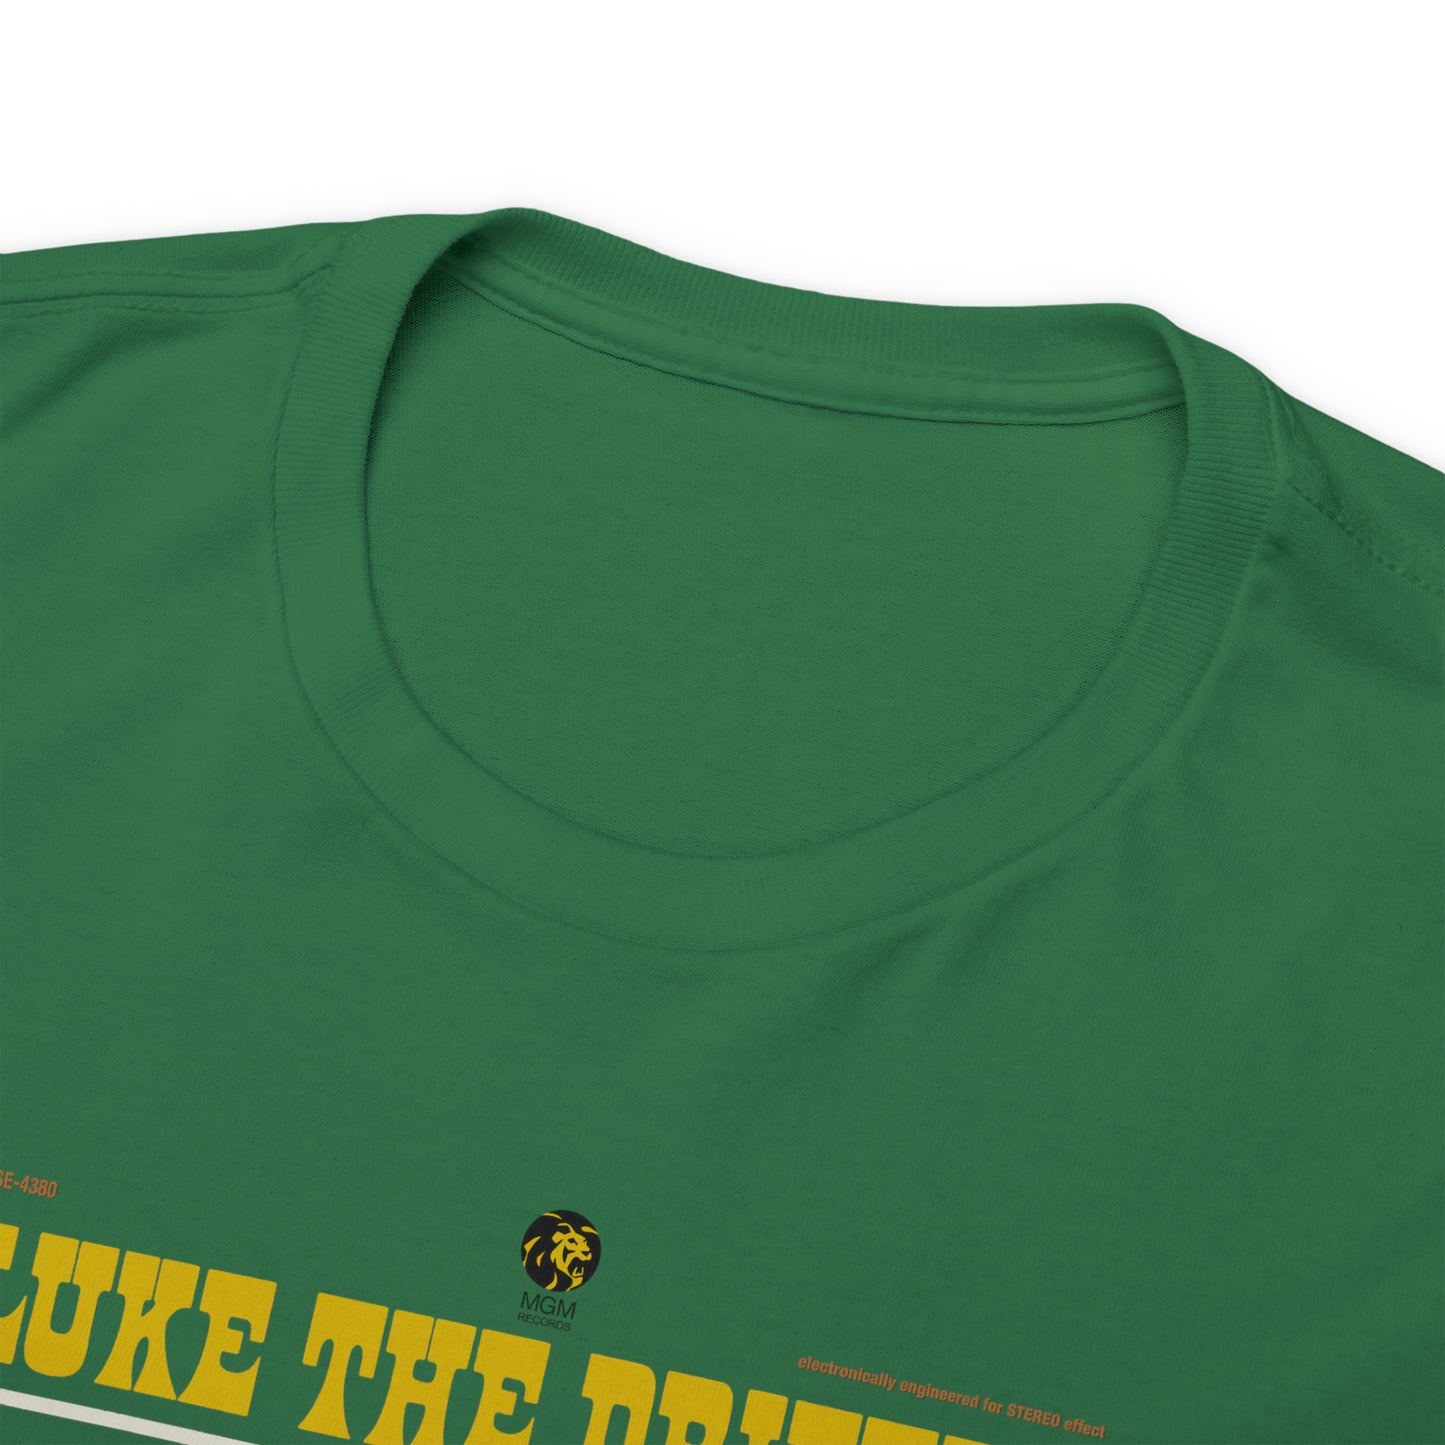 Luke the Drifter T-Shirt